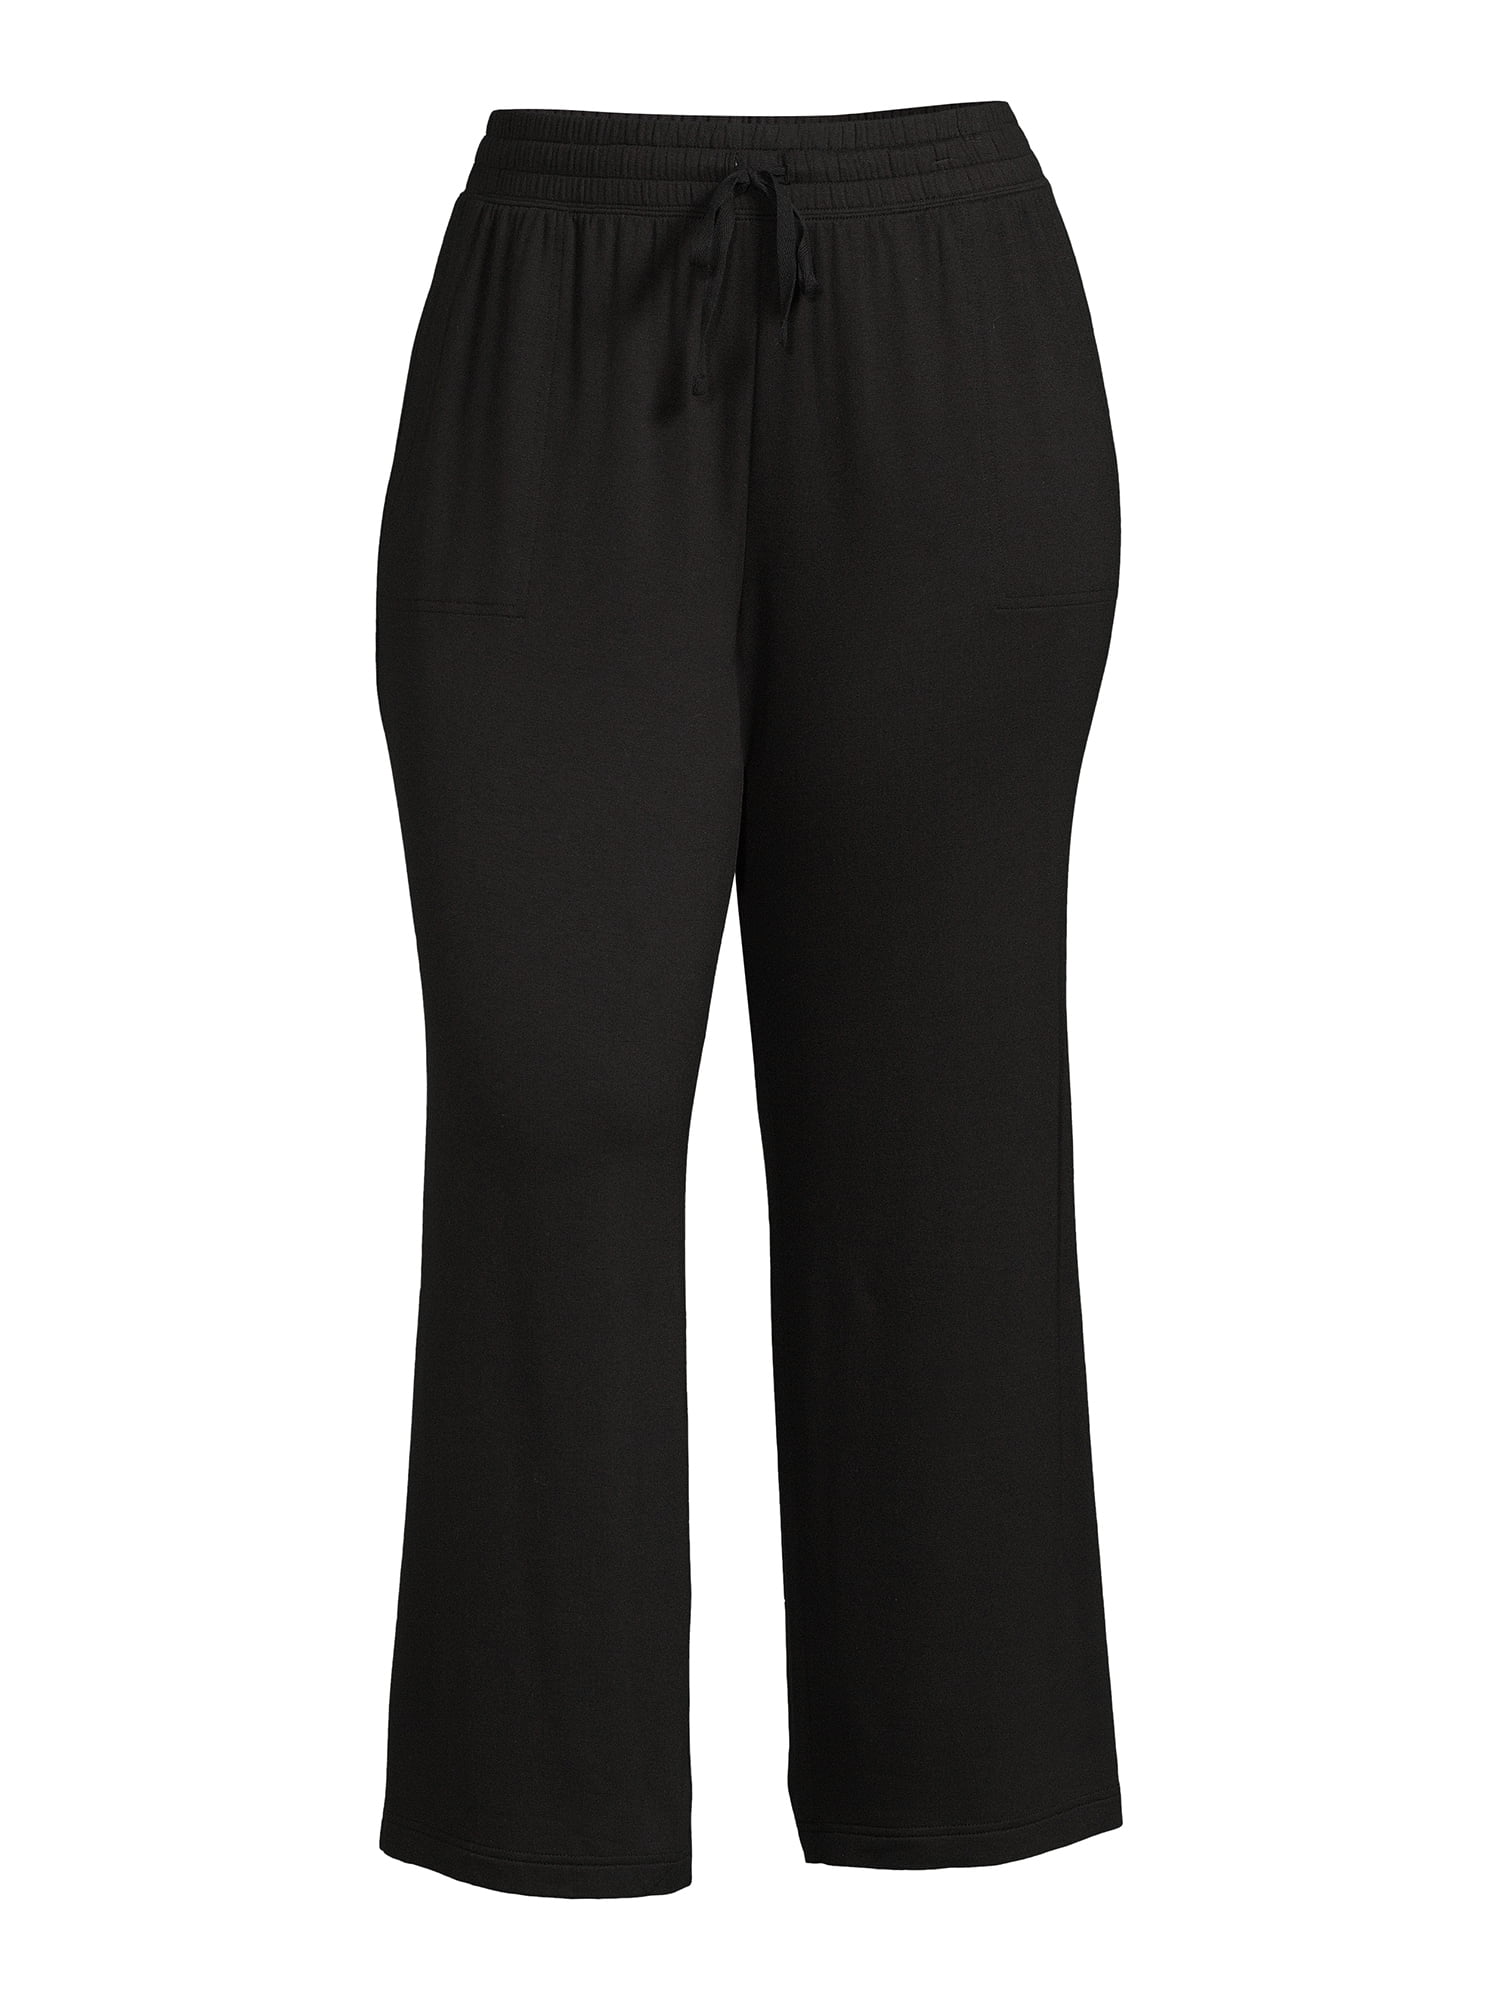 Terra & Sky Women's Plus Size Knit Pants, 28 Inseam 